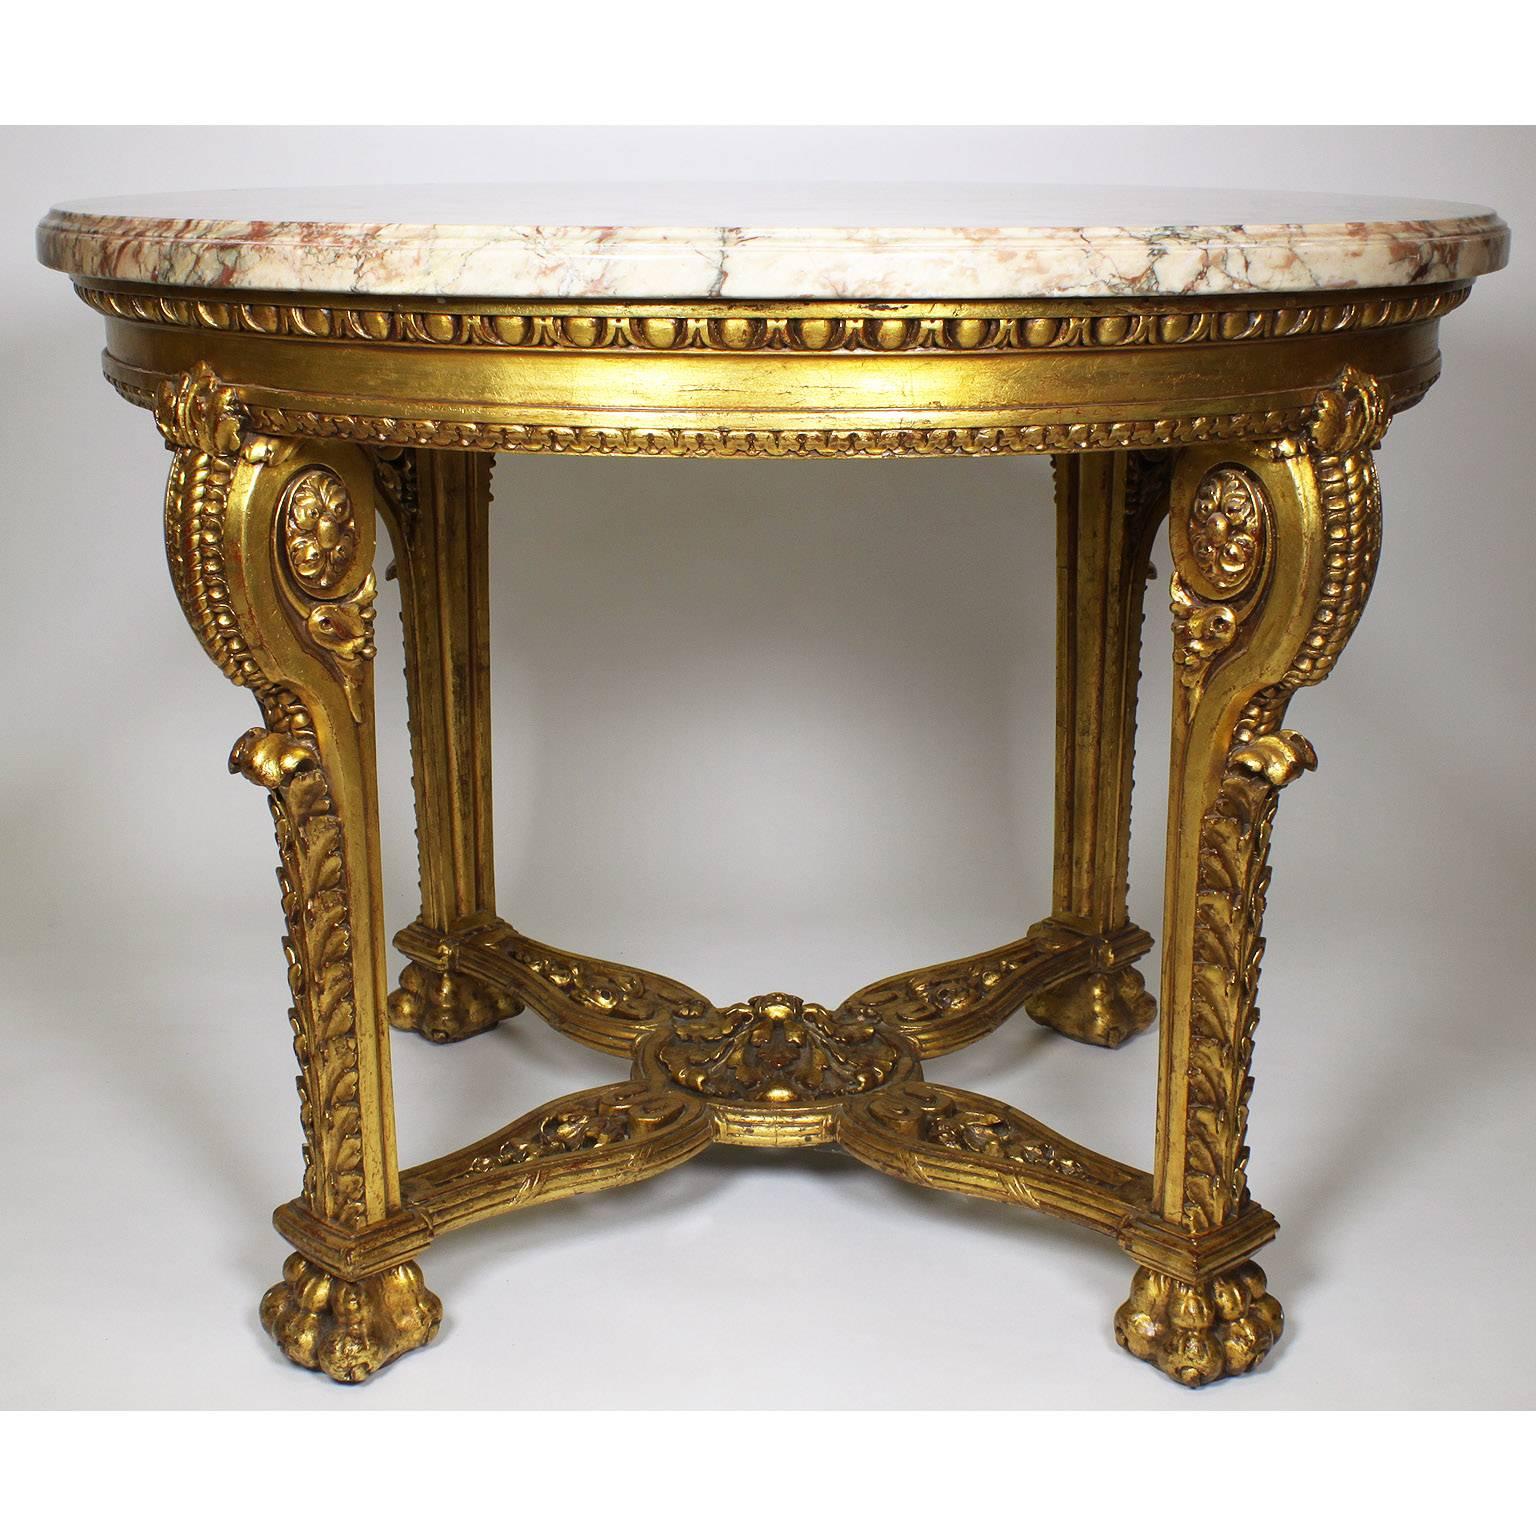 Table centrale circulaire en bois doré, de style Louis XV/XVI Transitionnel, baroque français du 19e au 20e siècle, avec un plateau en marbre brocatelle veiné de couleur pêche. Les quatre pieds sont ornés de rinceaux et d'acanthes se terminant par